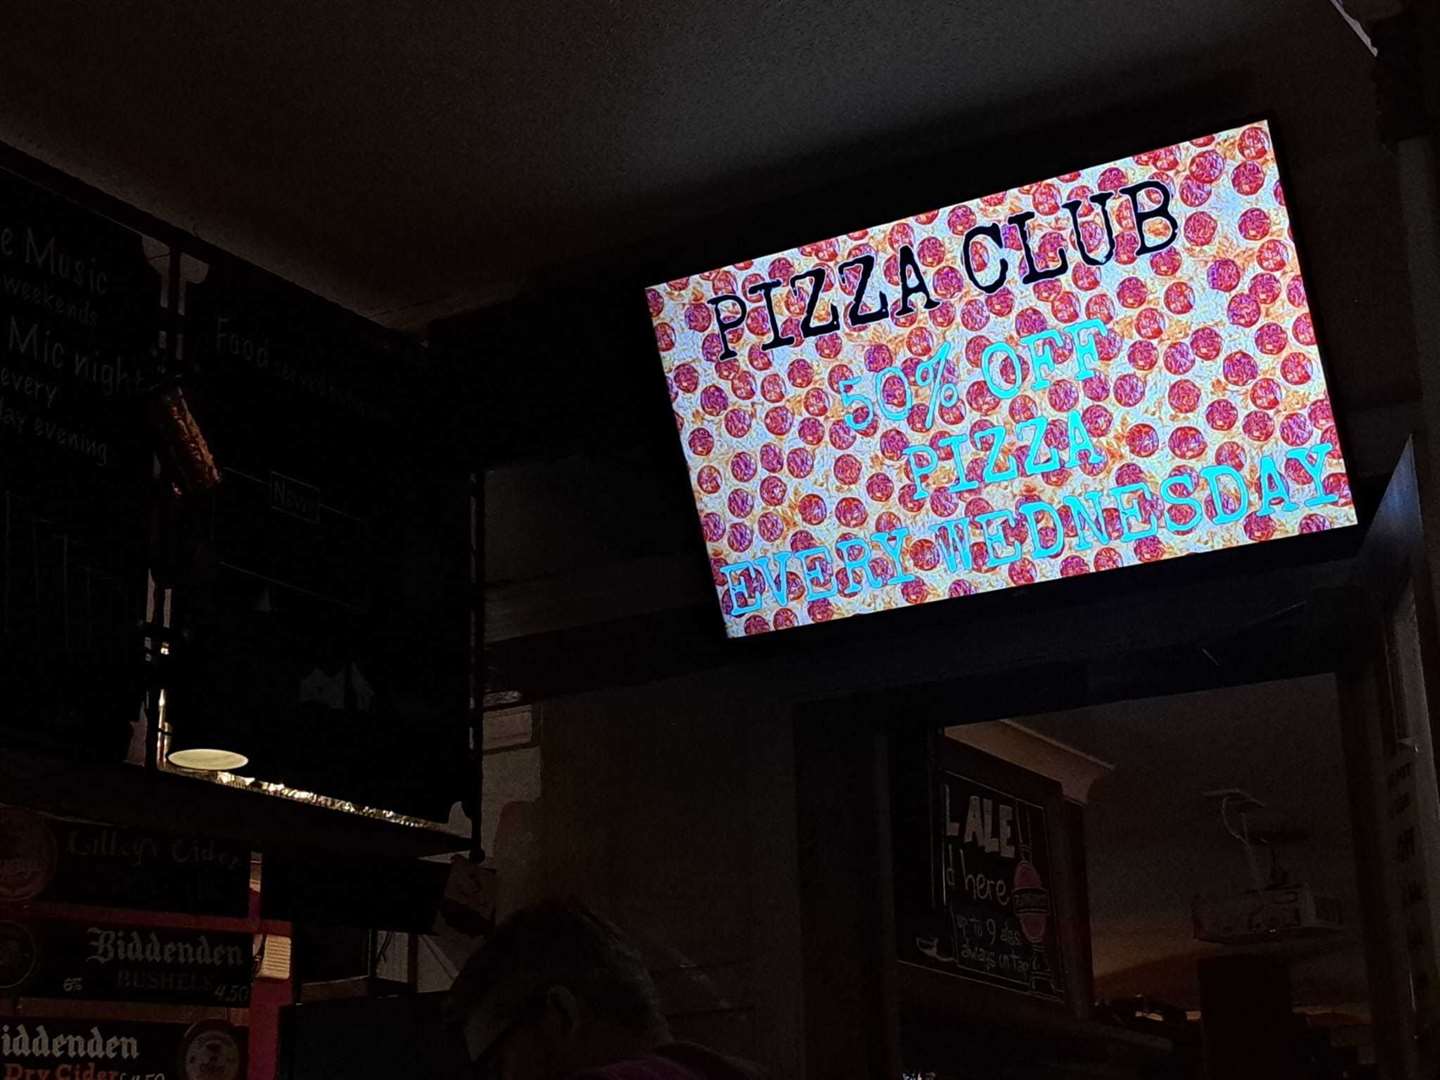 Pizza Club!